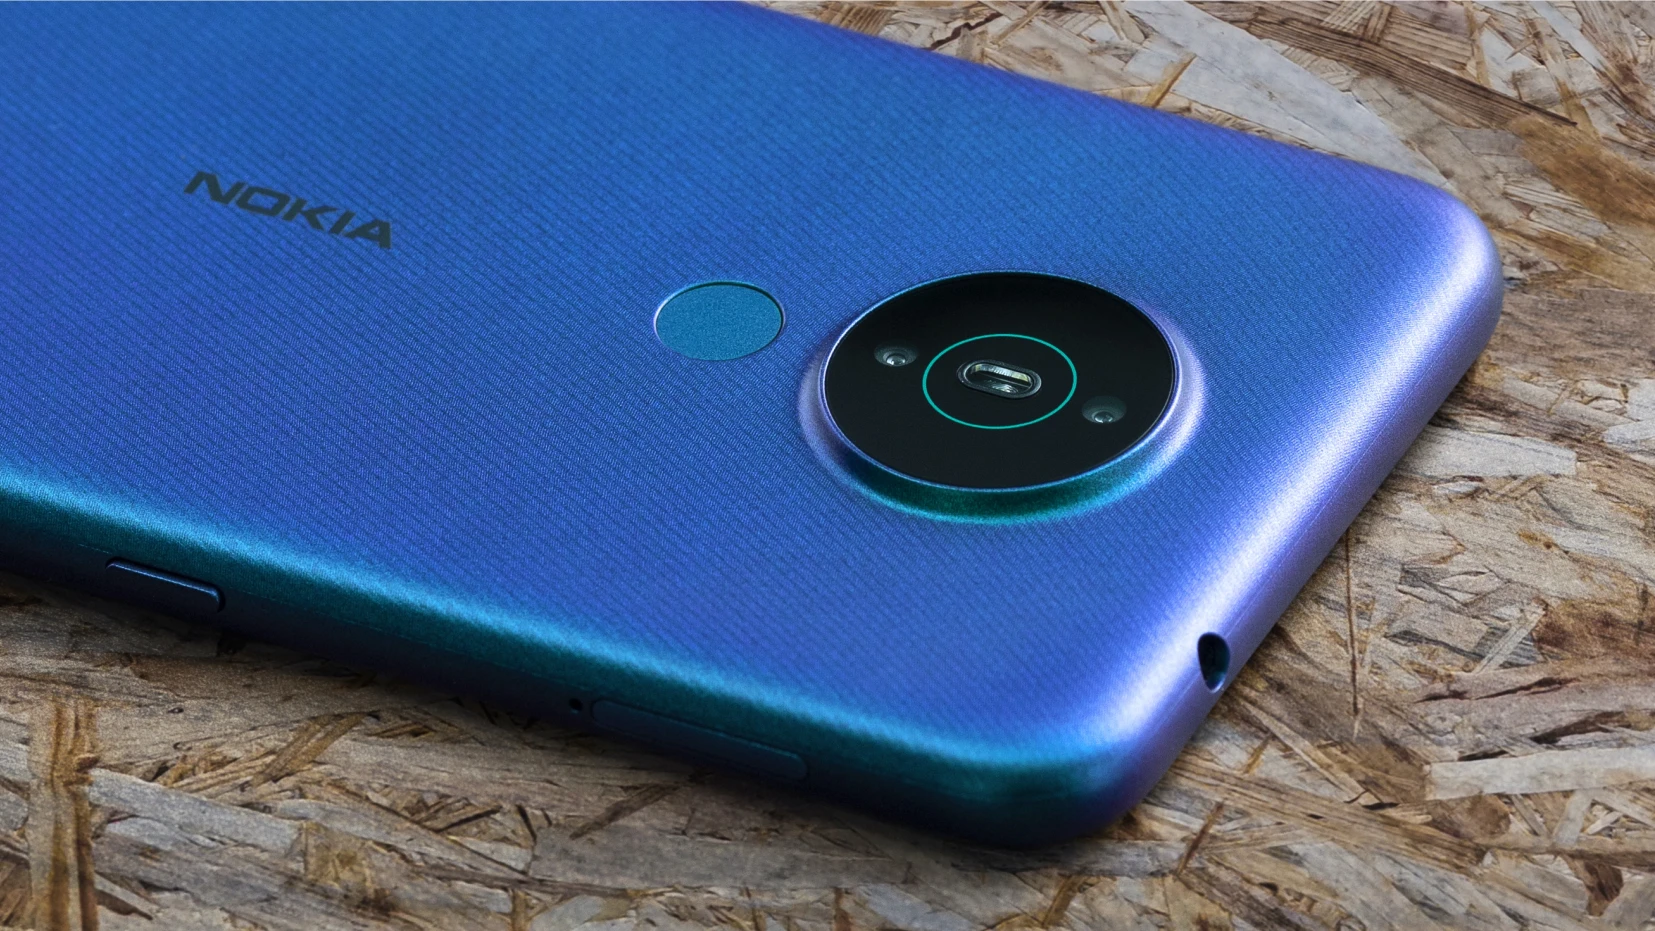 Nokia 1.4 è il nuovo smartphone con Android Go Edition di HMD Global (specifiche tecniche)